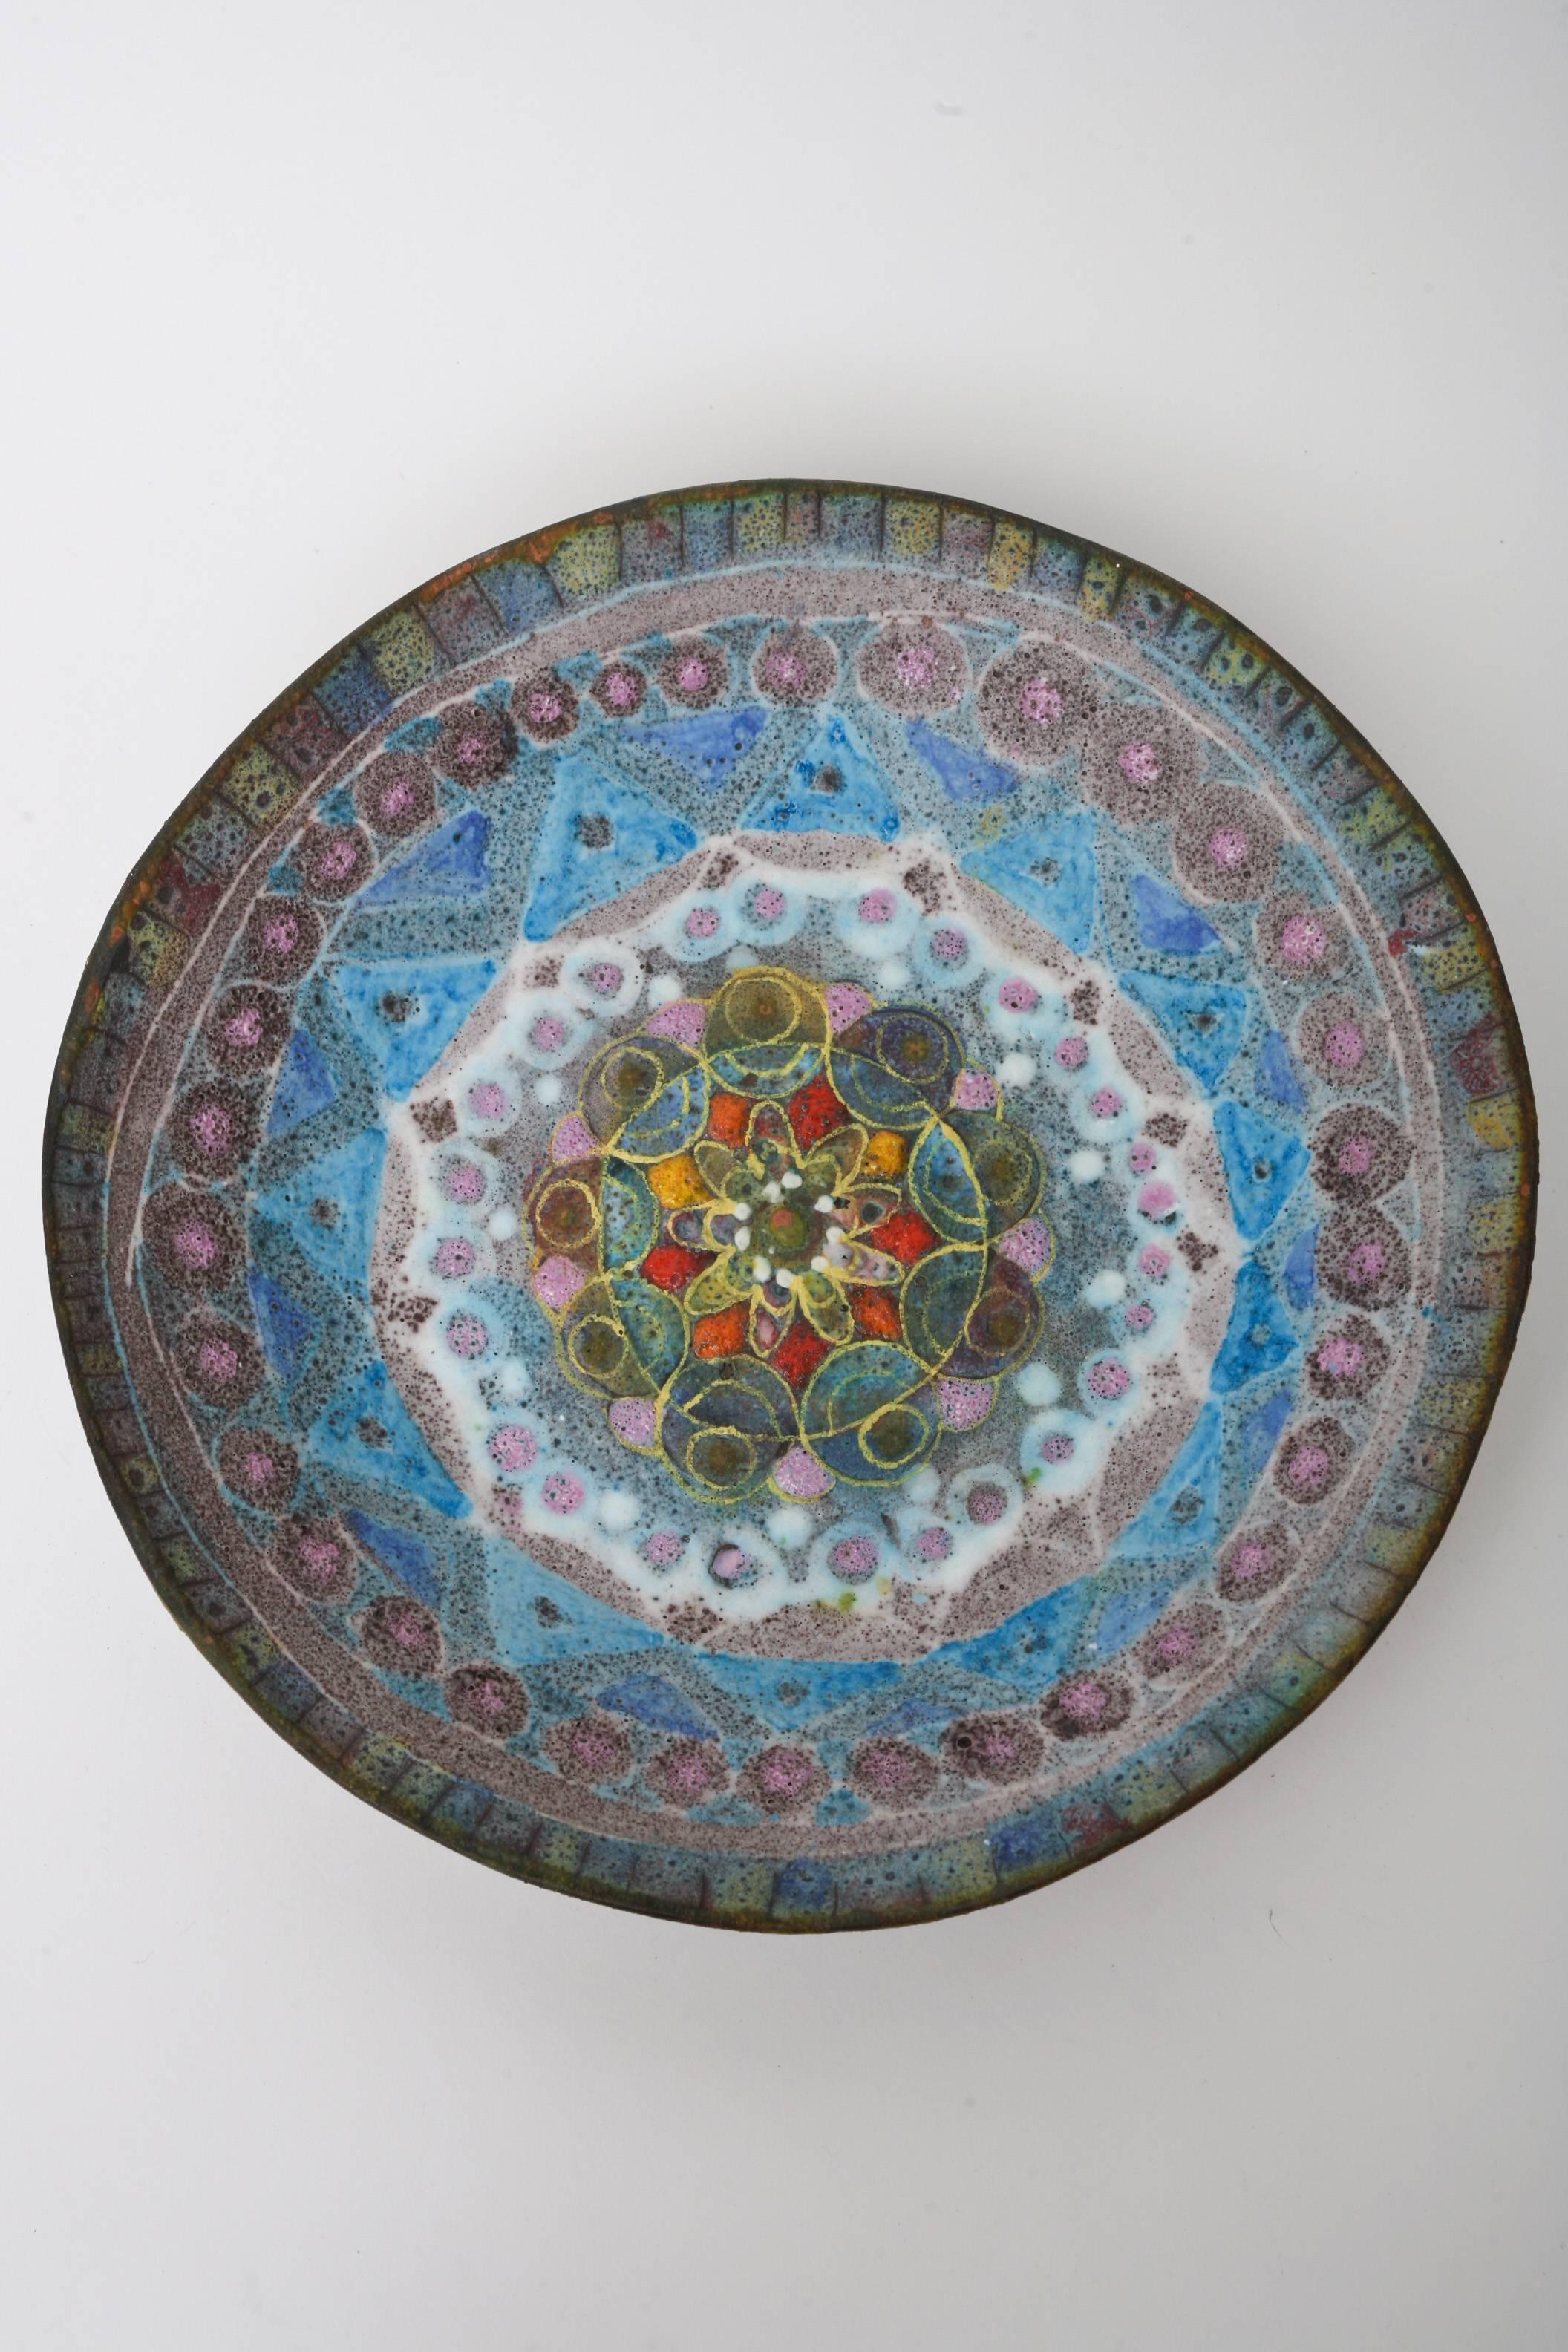 Le magnifique motif et les subtilités de ce bol géométrique en céramique italienne à glaçure salée ont une grande influence sur le travail du grand Fantoni. Les couleurs sont exquises, inhabituelles et riches. Il s'agit d'une tapisserie et d'un